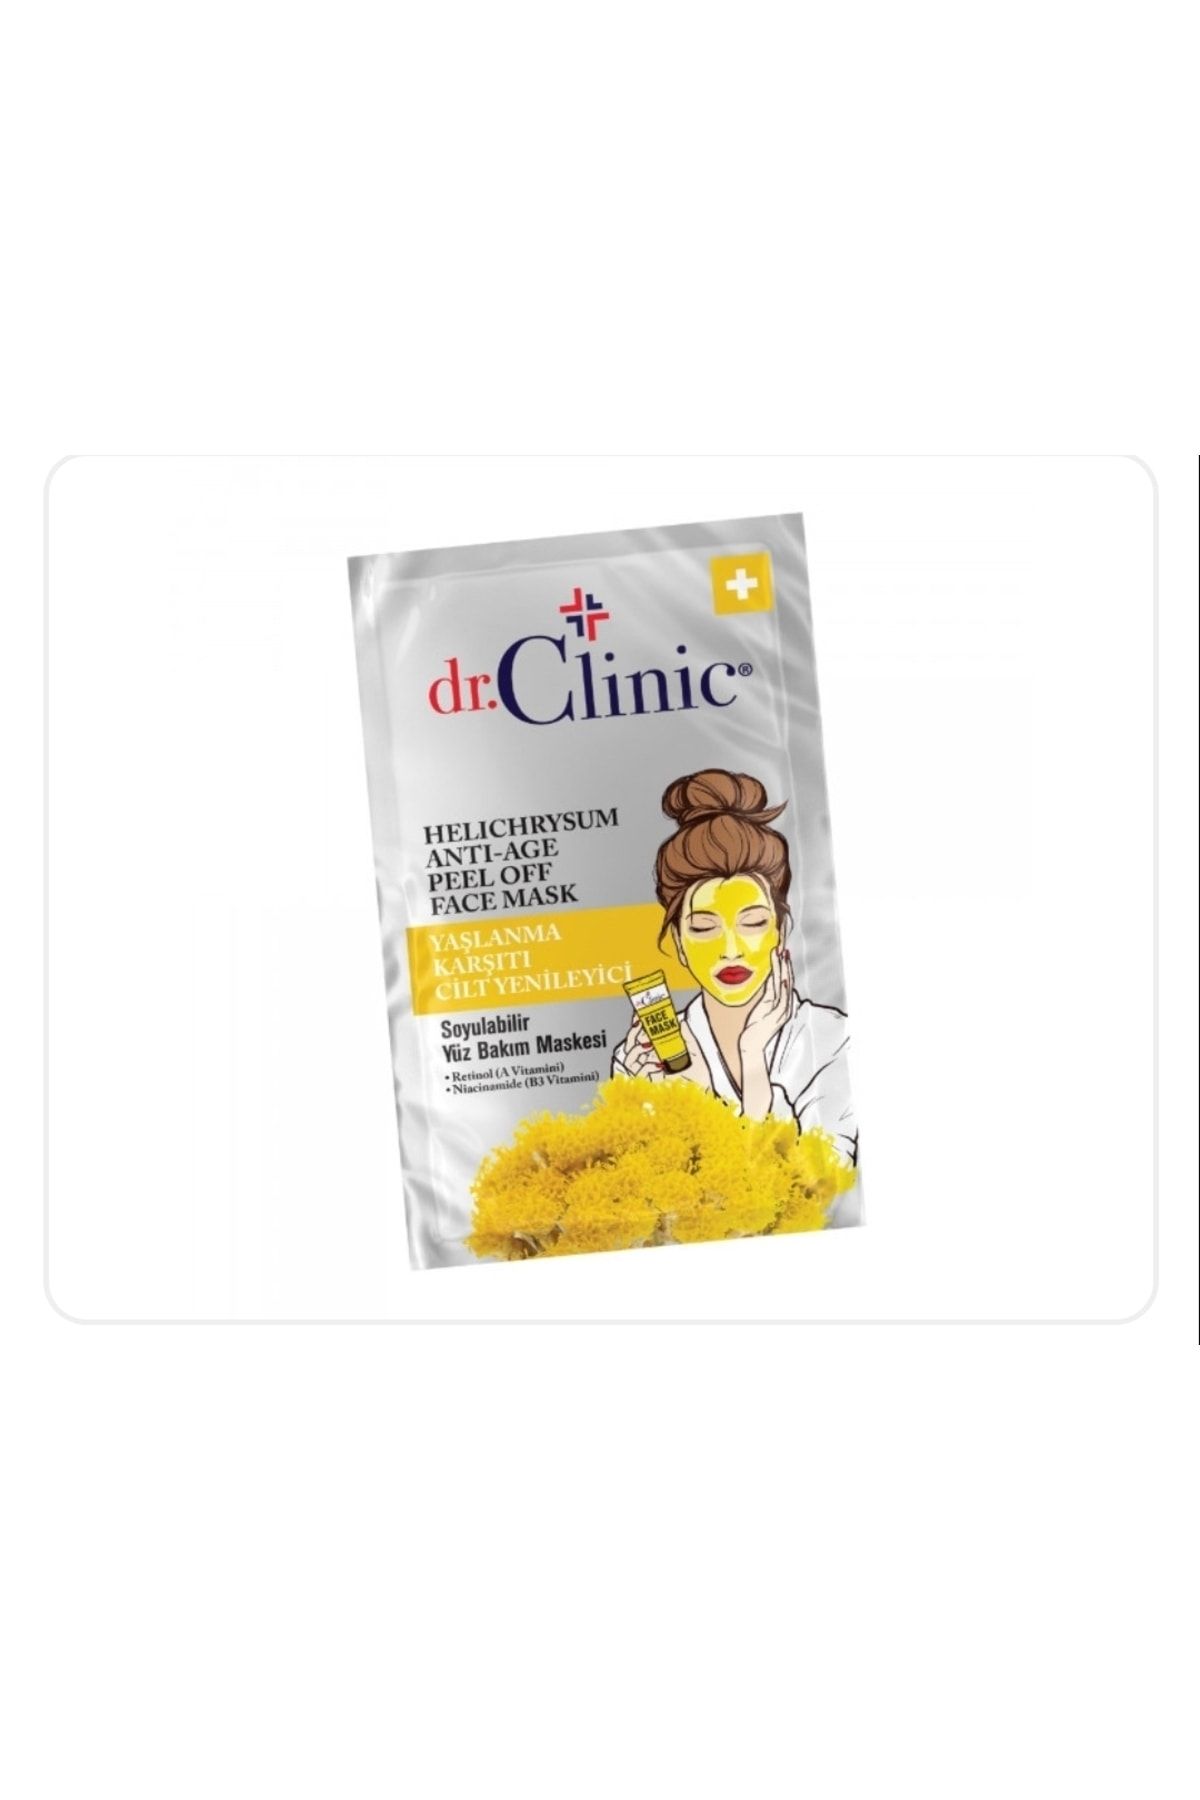 Dr. Clinic Ölmez Çiçeği Otu HELİCHRYSUM Cilt Yenileyici Soyulabilir Maske 10 ml